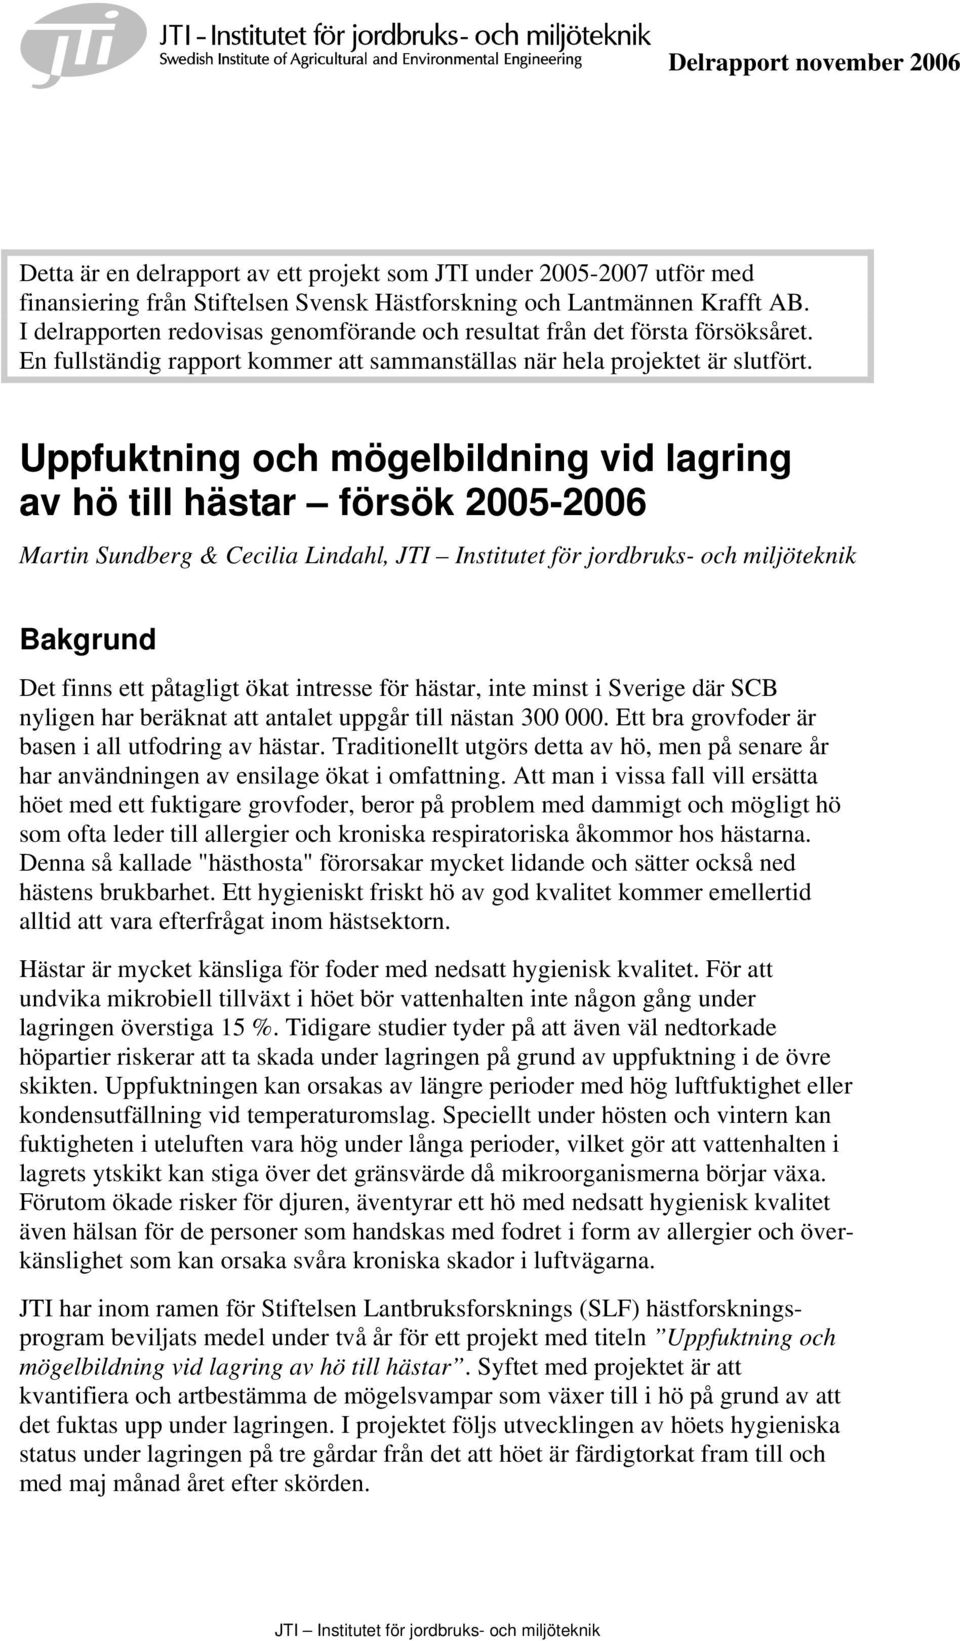 Uppfuktning och mögelbildning vid lagring av hö till hästar försök 00-00 Martin Sundberg & Cecilia Lindahl, Bakgrund Det finns ett påtagligt ökat intresse för hästar, inte minst i Sverige där SCB